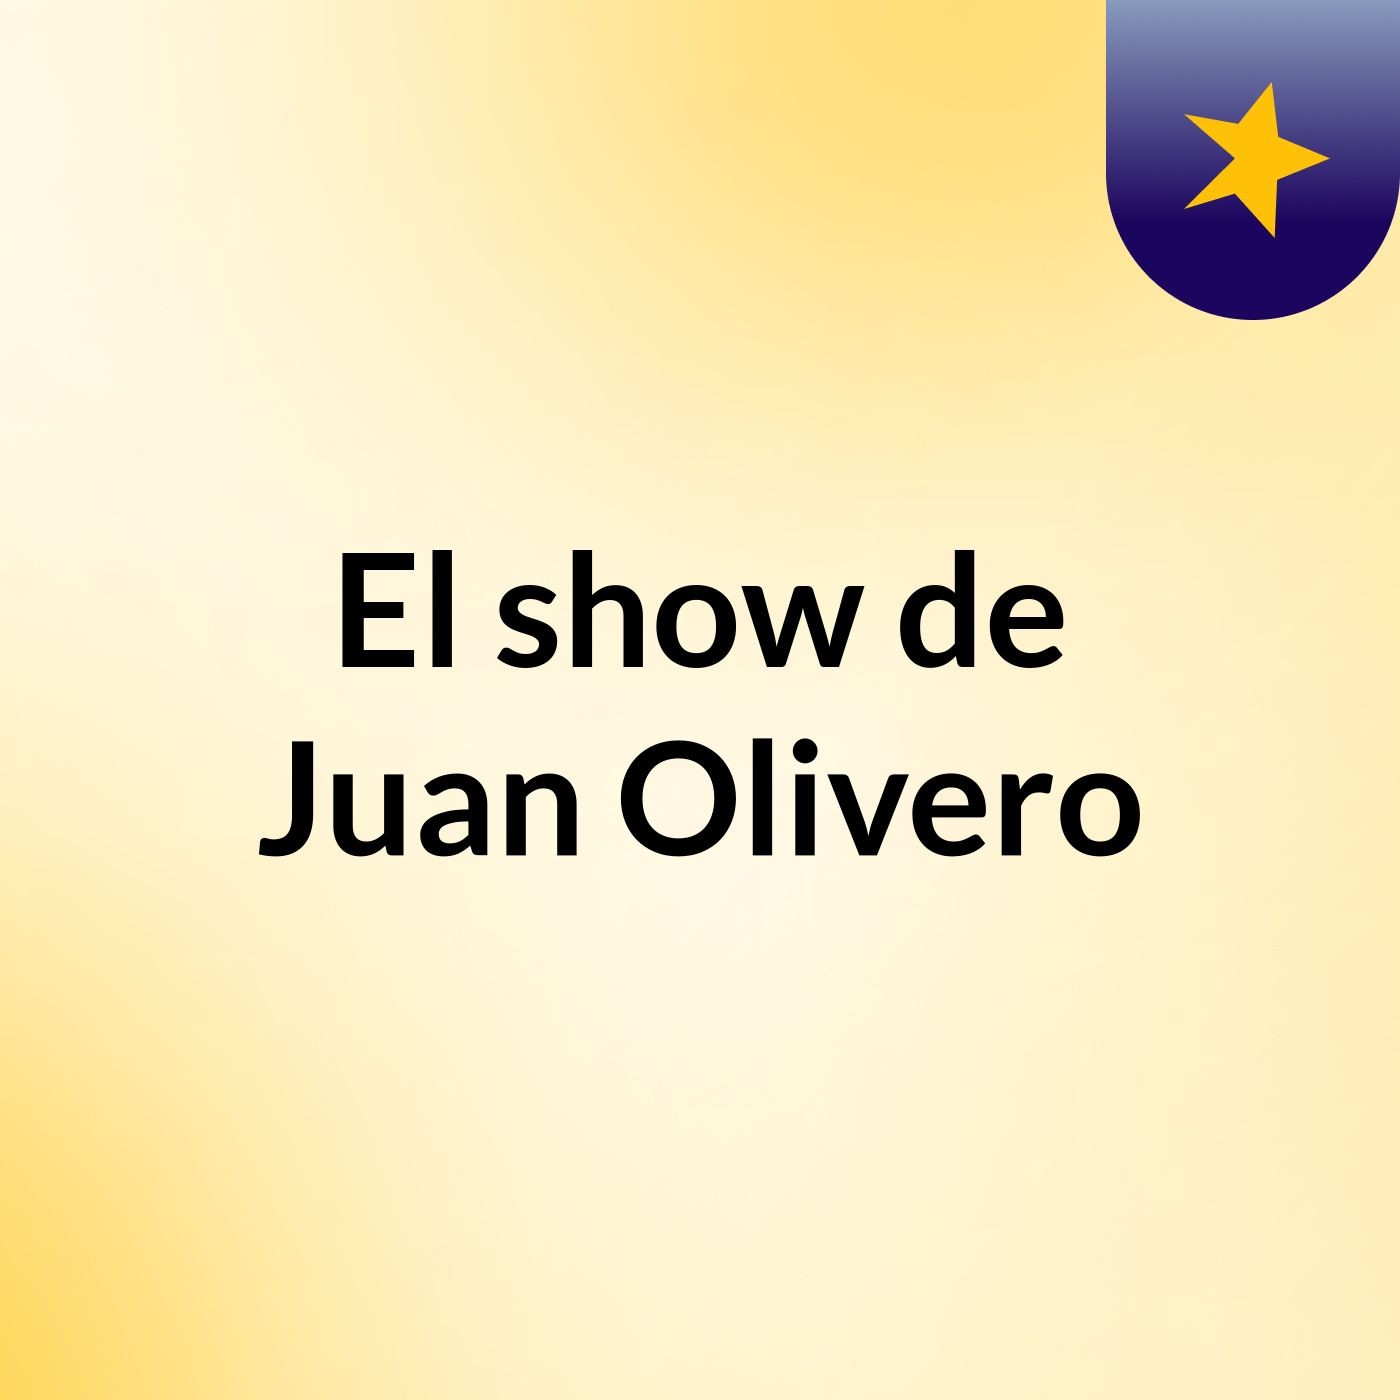 El show de Juan Olivero